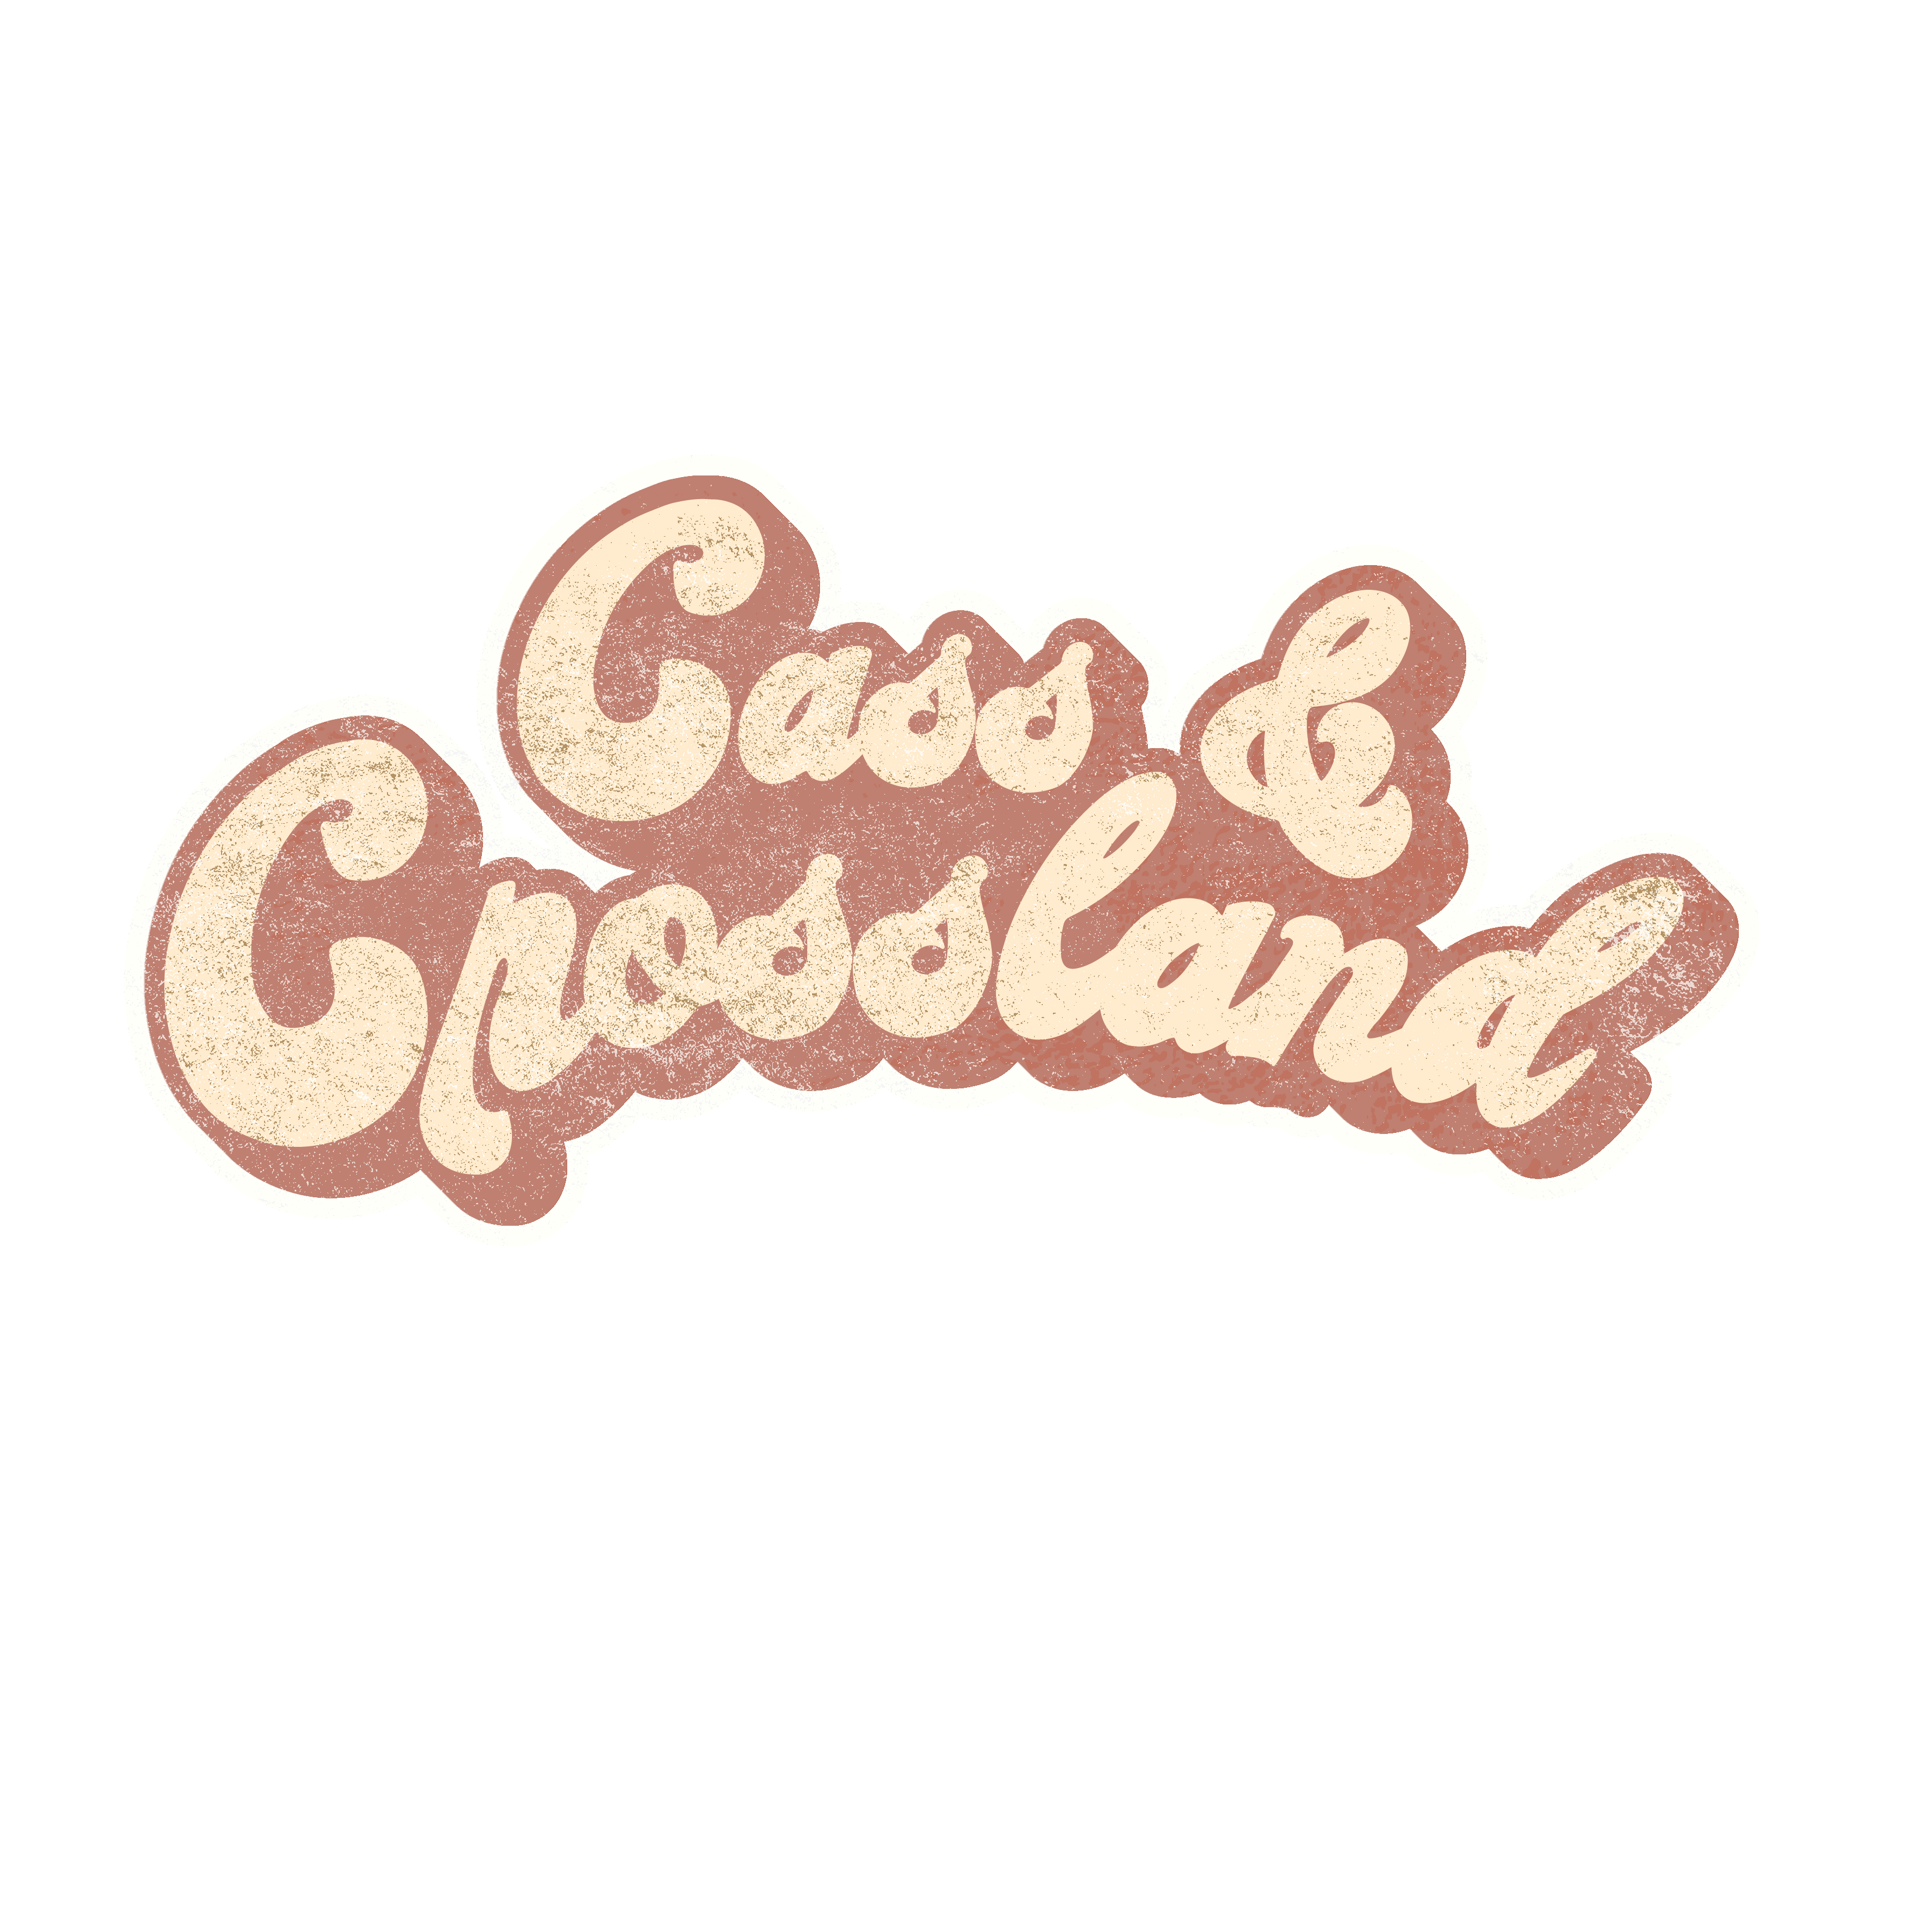 Cass & Crossland